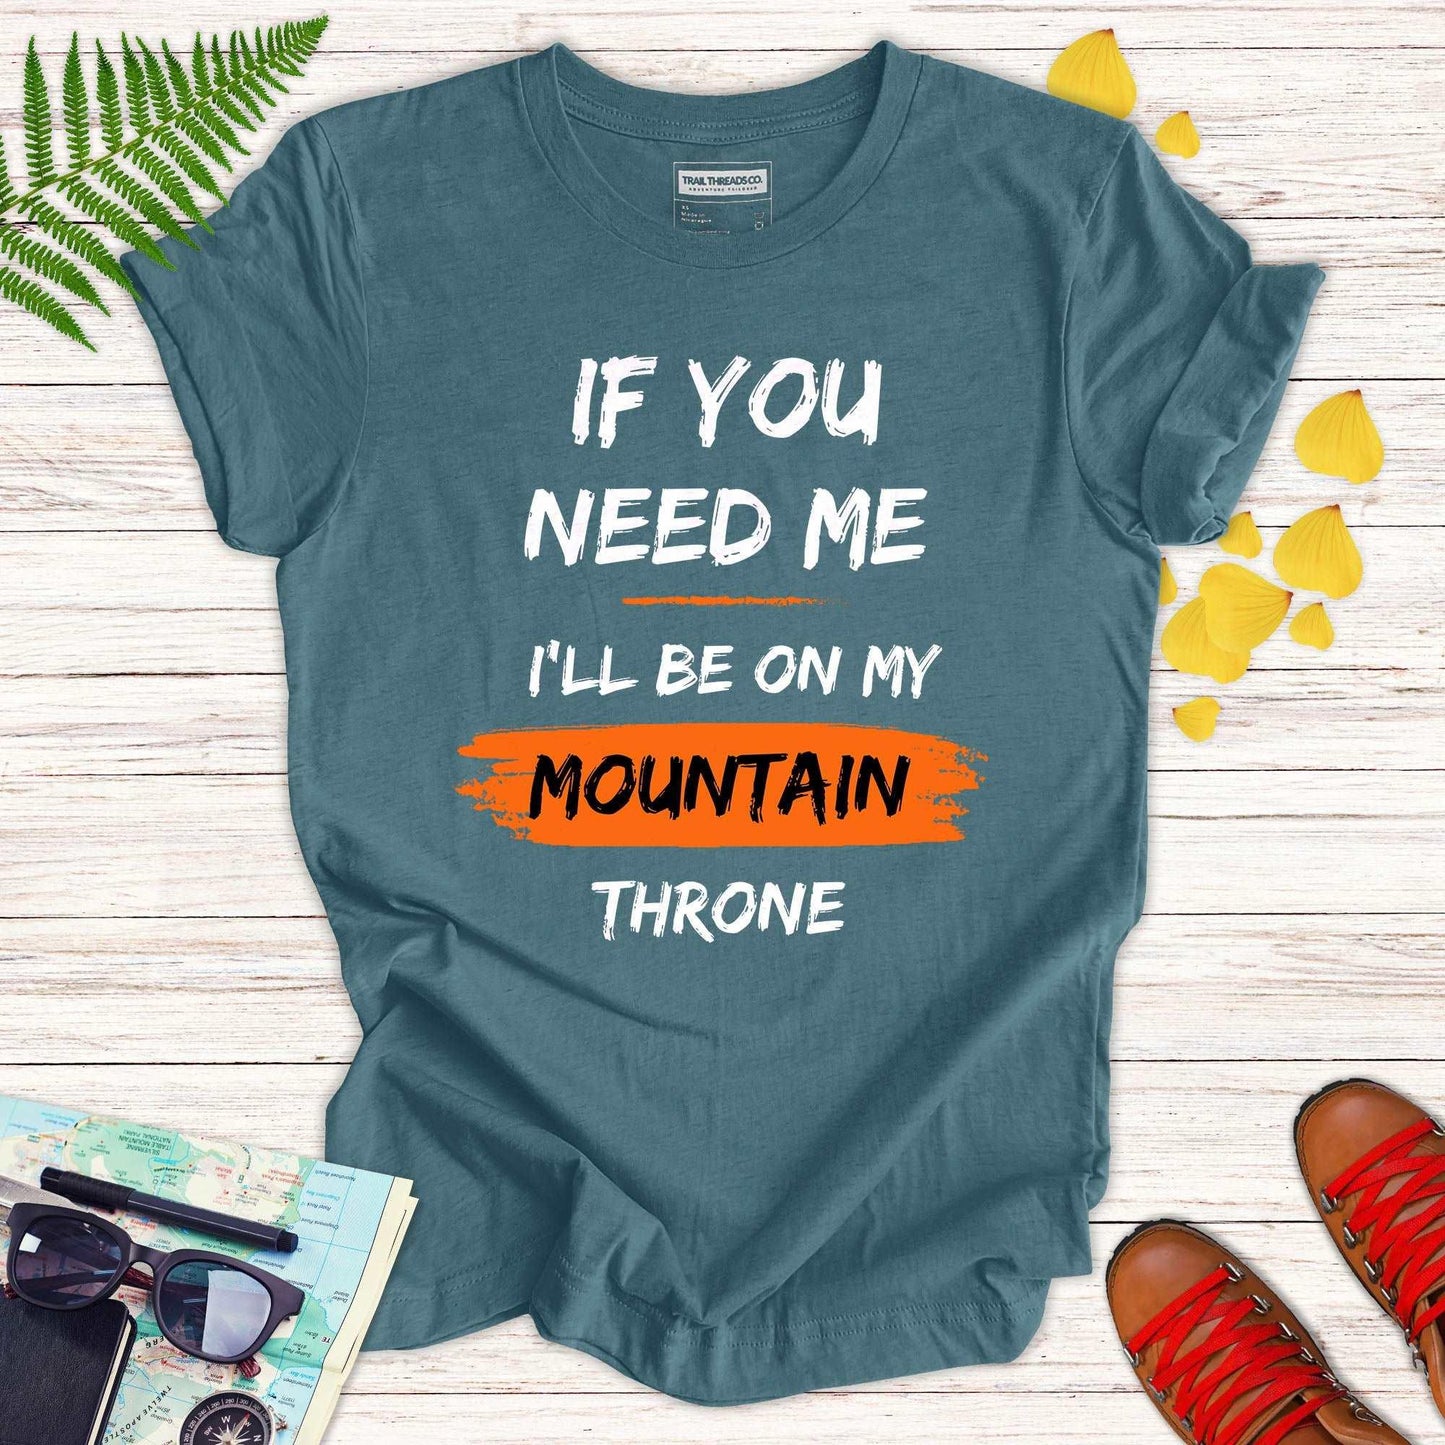 Mountain Throne T-shirt